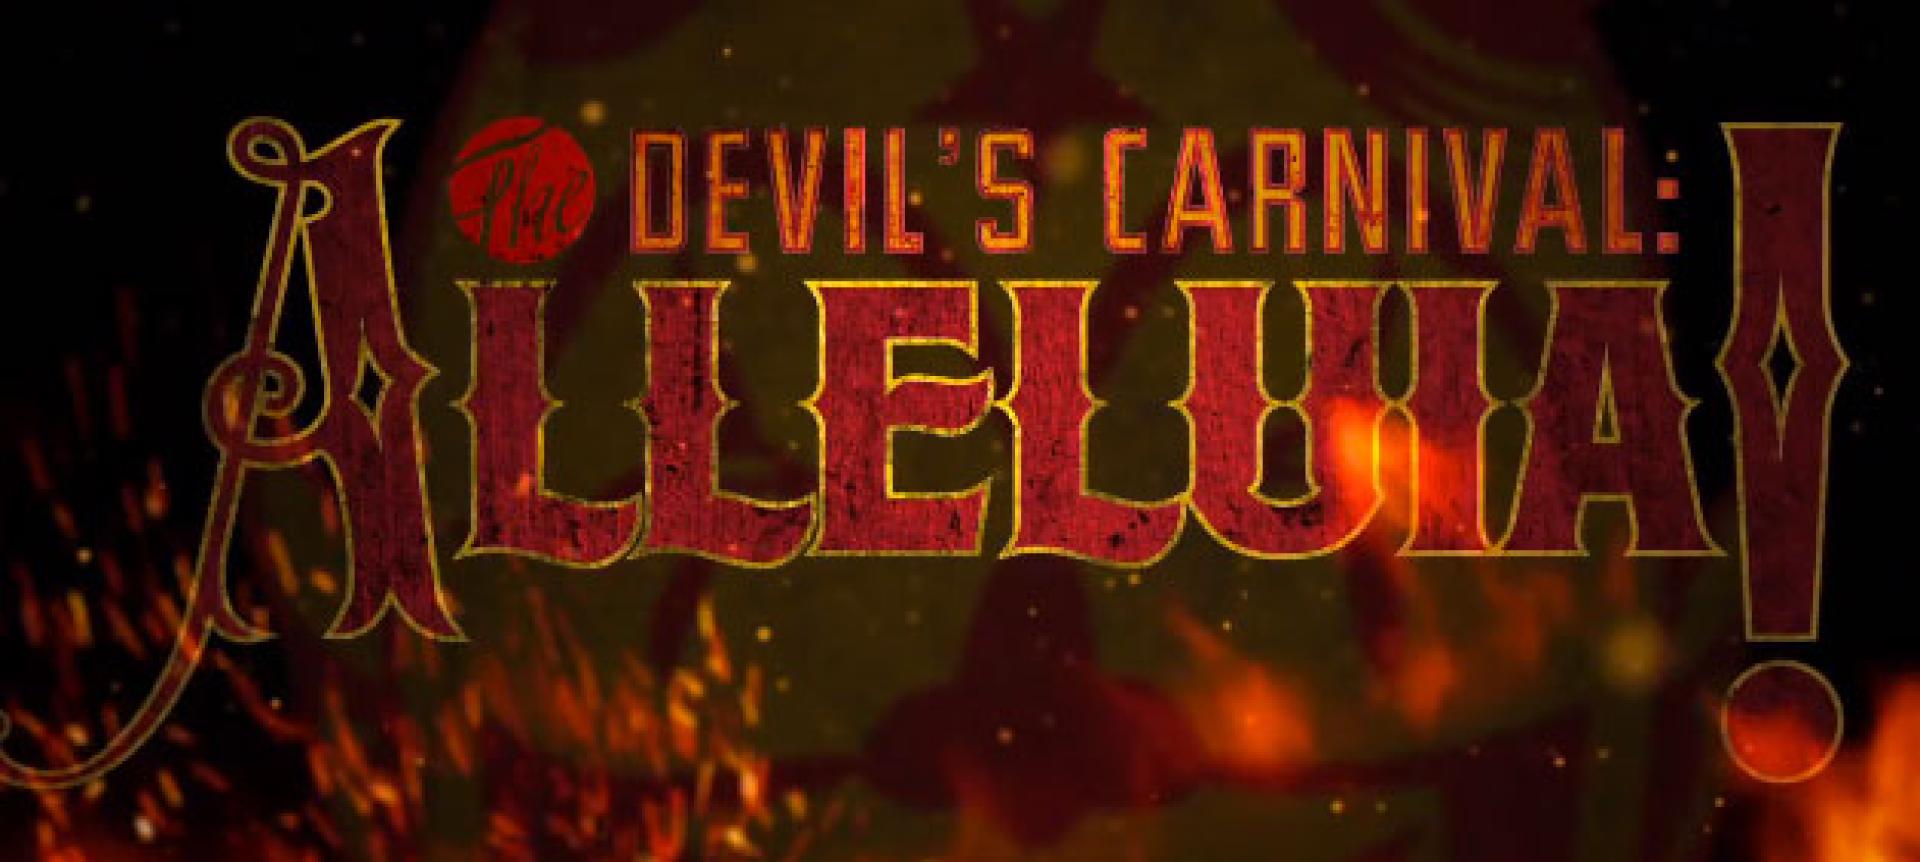 The Devil's Carnival: Alleluia!-előzetes